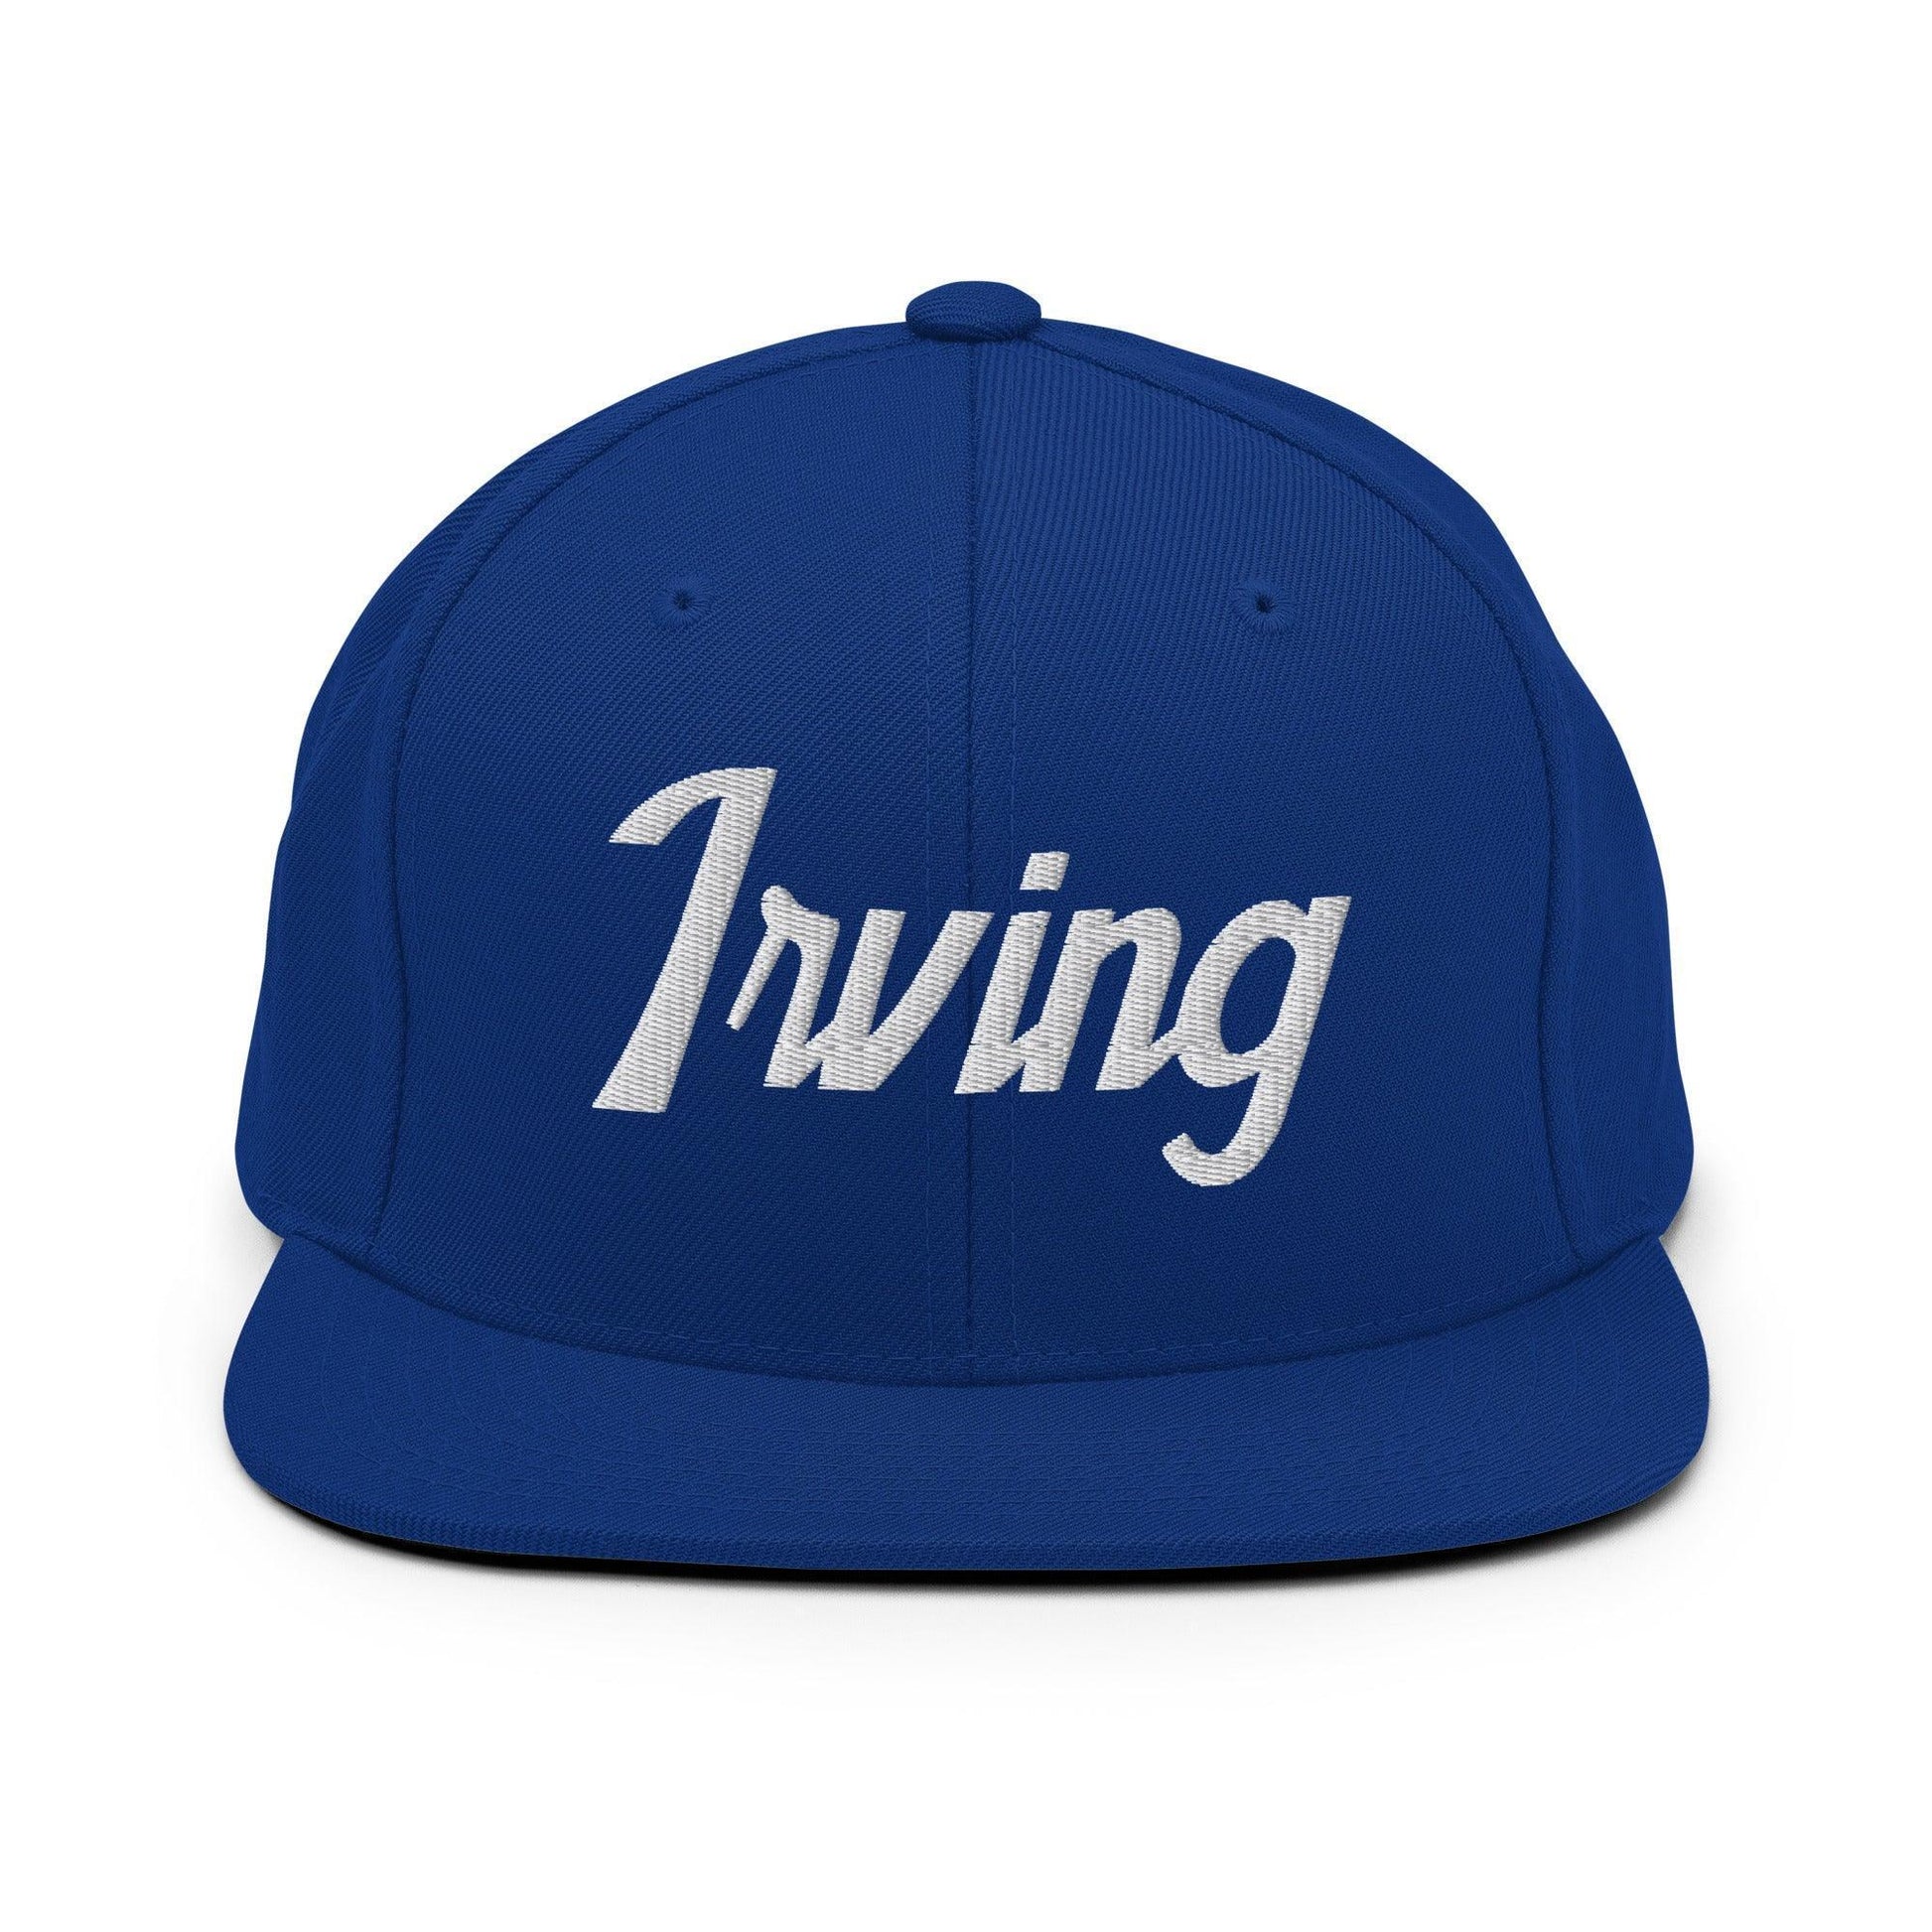 Irving Script Snapback Hat Royal Blue